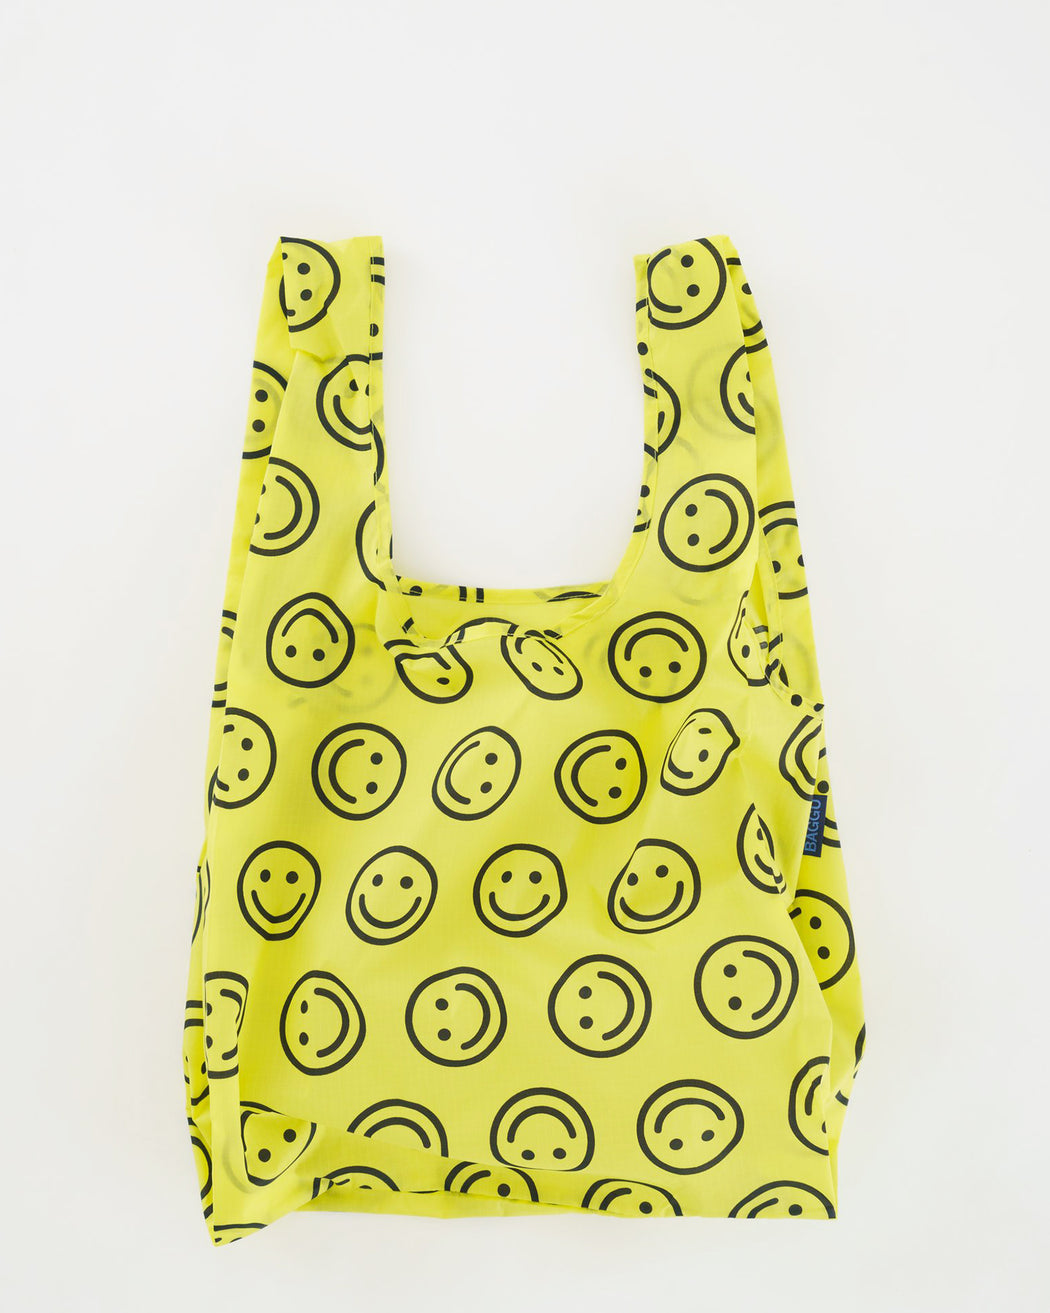 Baggu Reusable Standard Shopping Bag in Grass – Annie's Blue